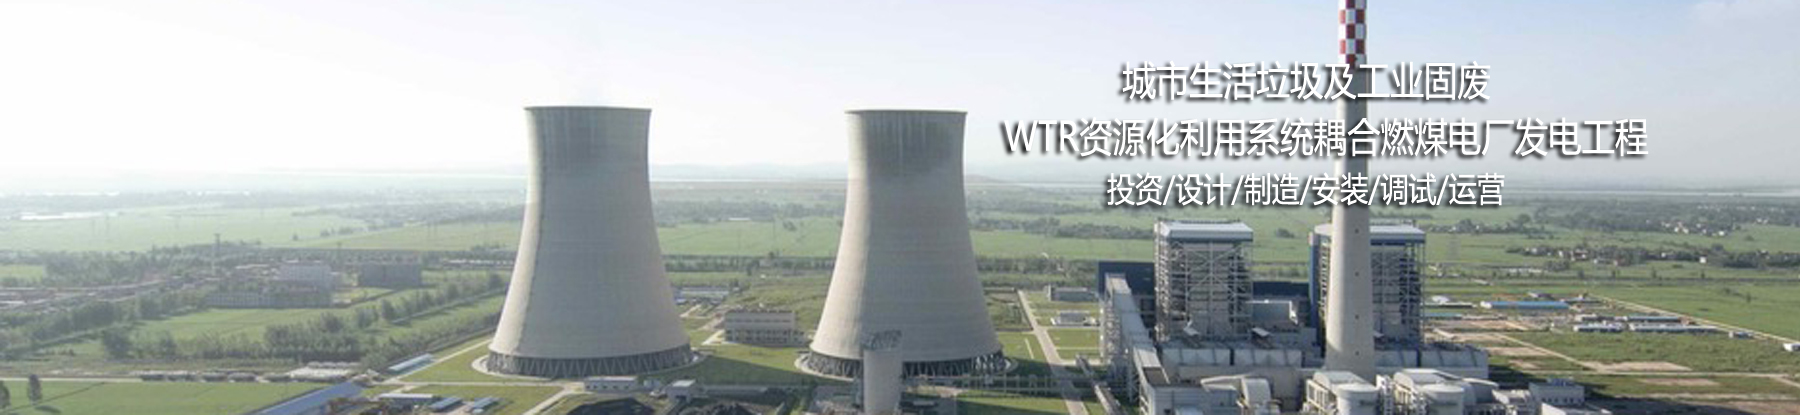 生活垃圾/工业固废WTR资源化利用系统耦合掺烧燃煤电厂发电/